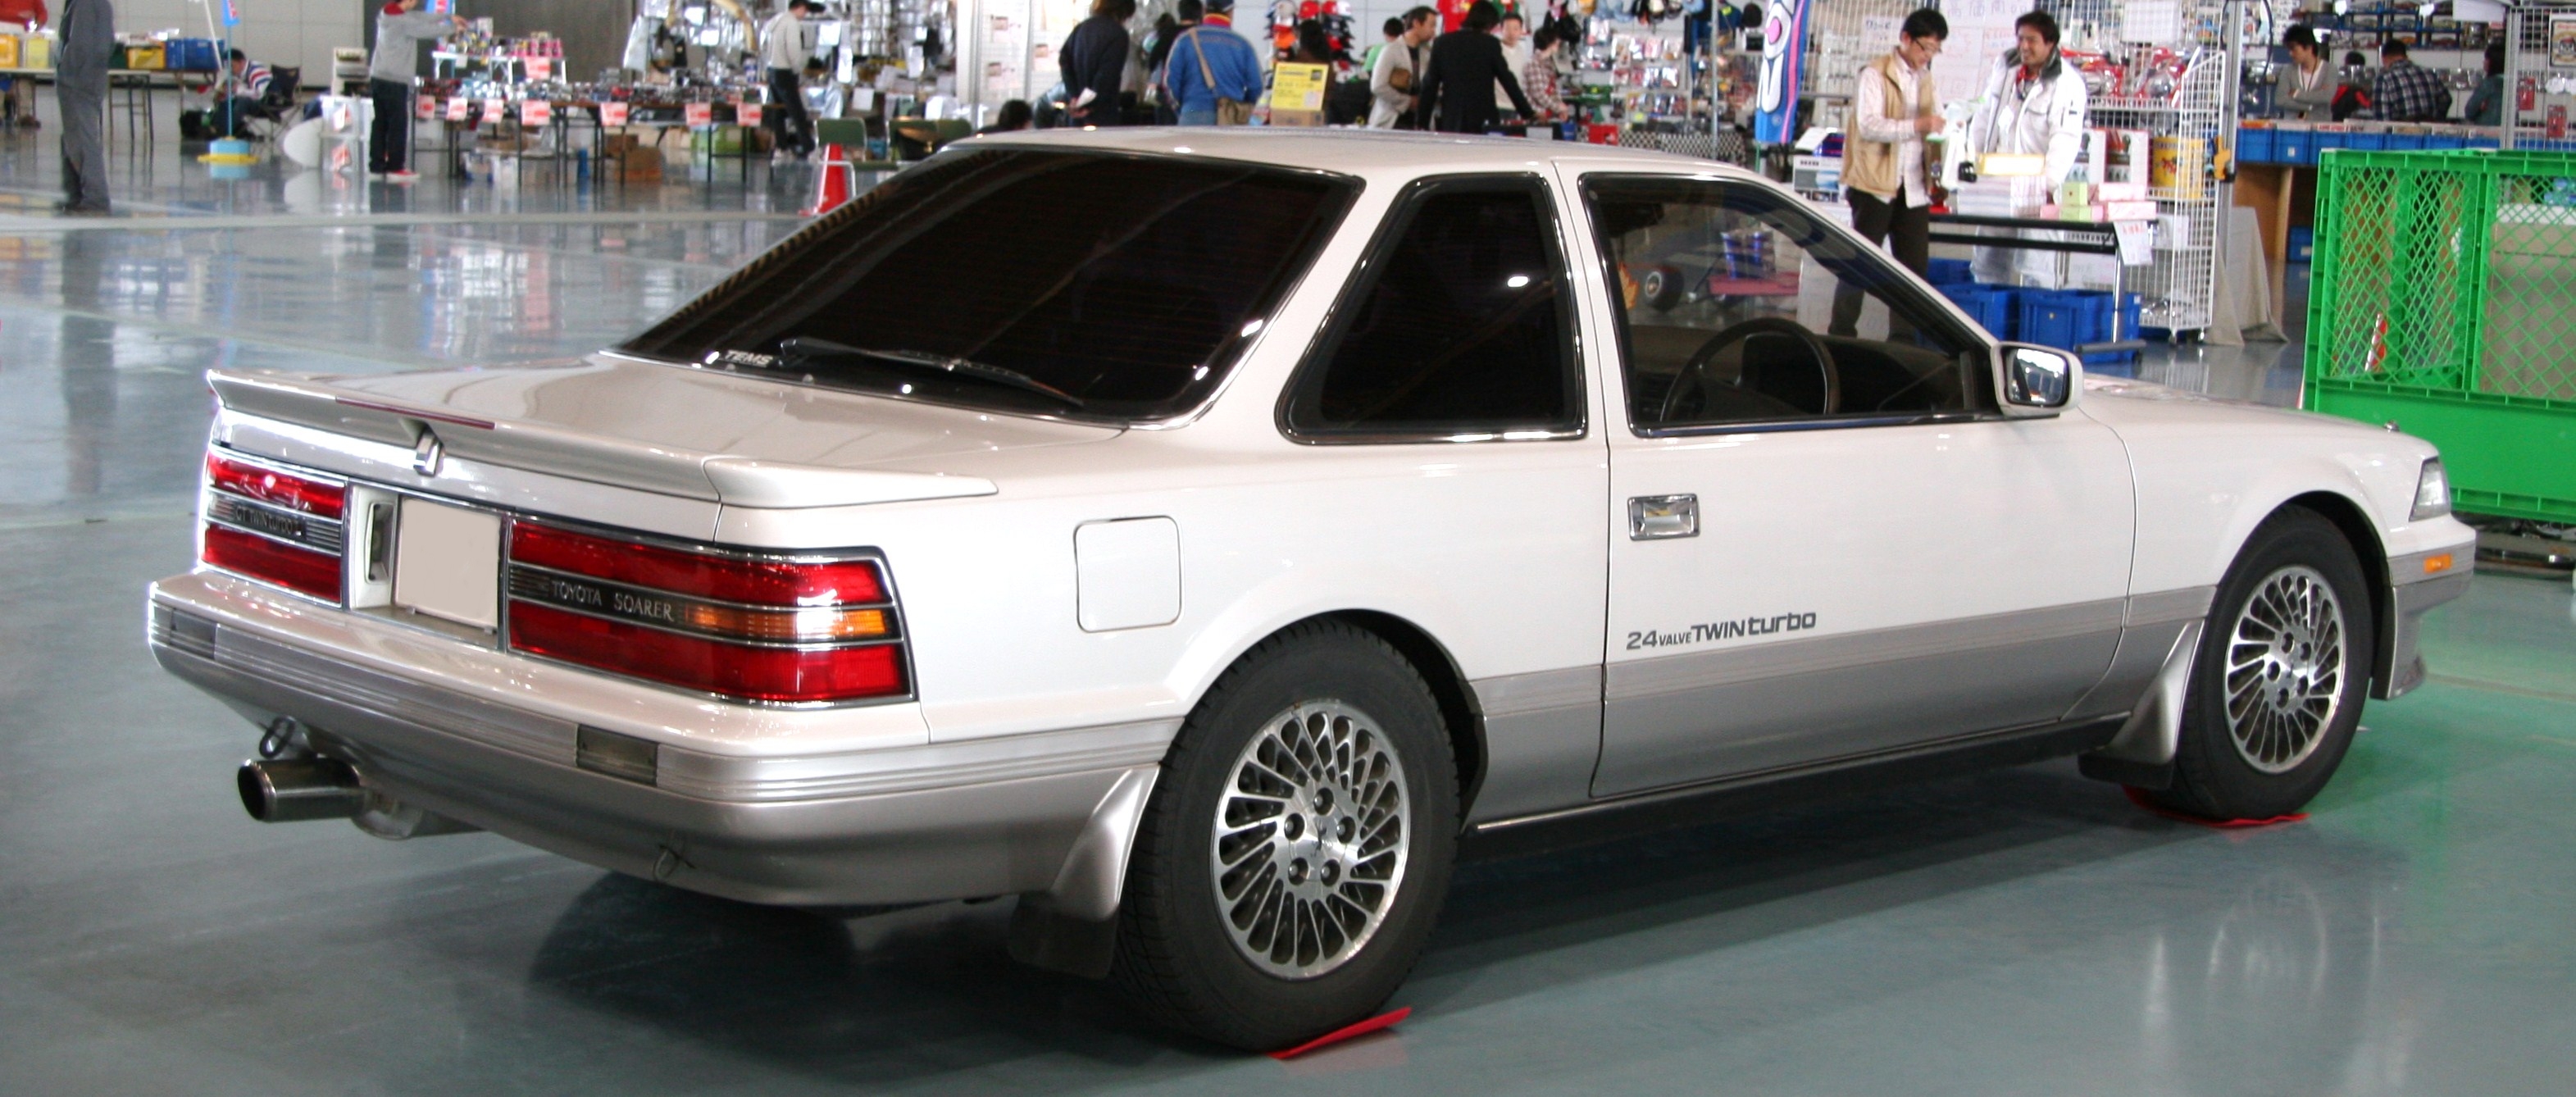 Toyota Soarer 1991 photo - 1